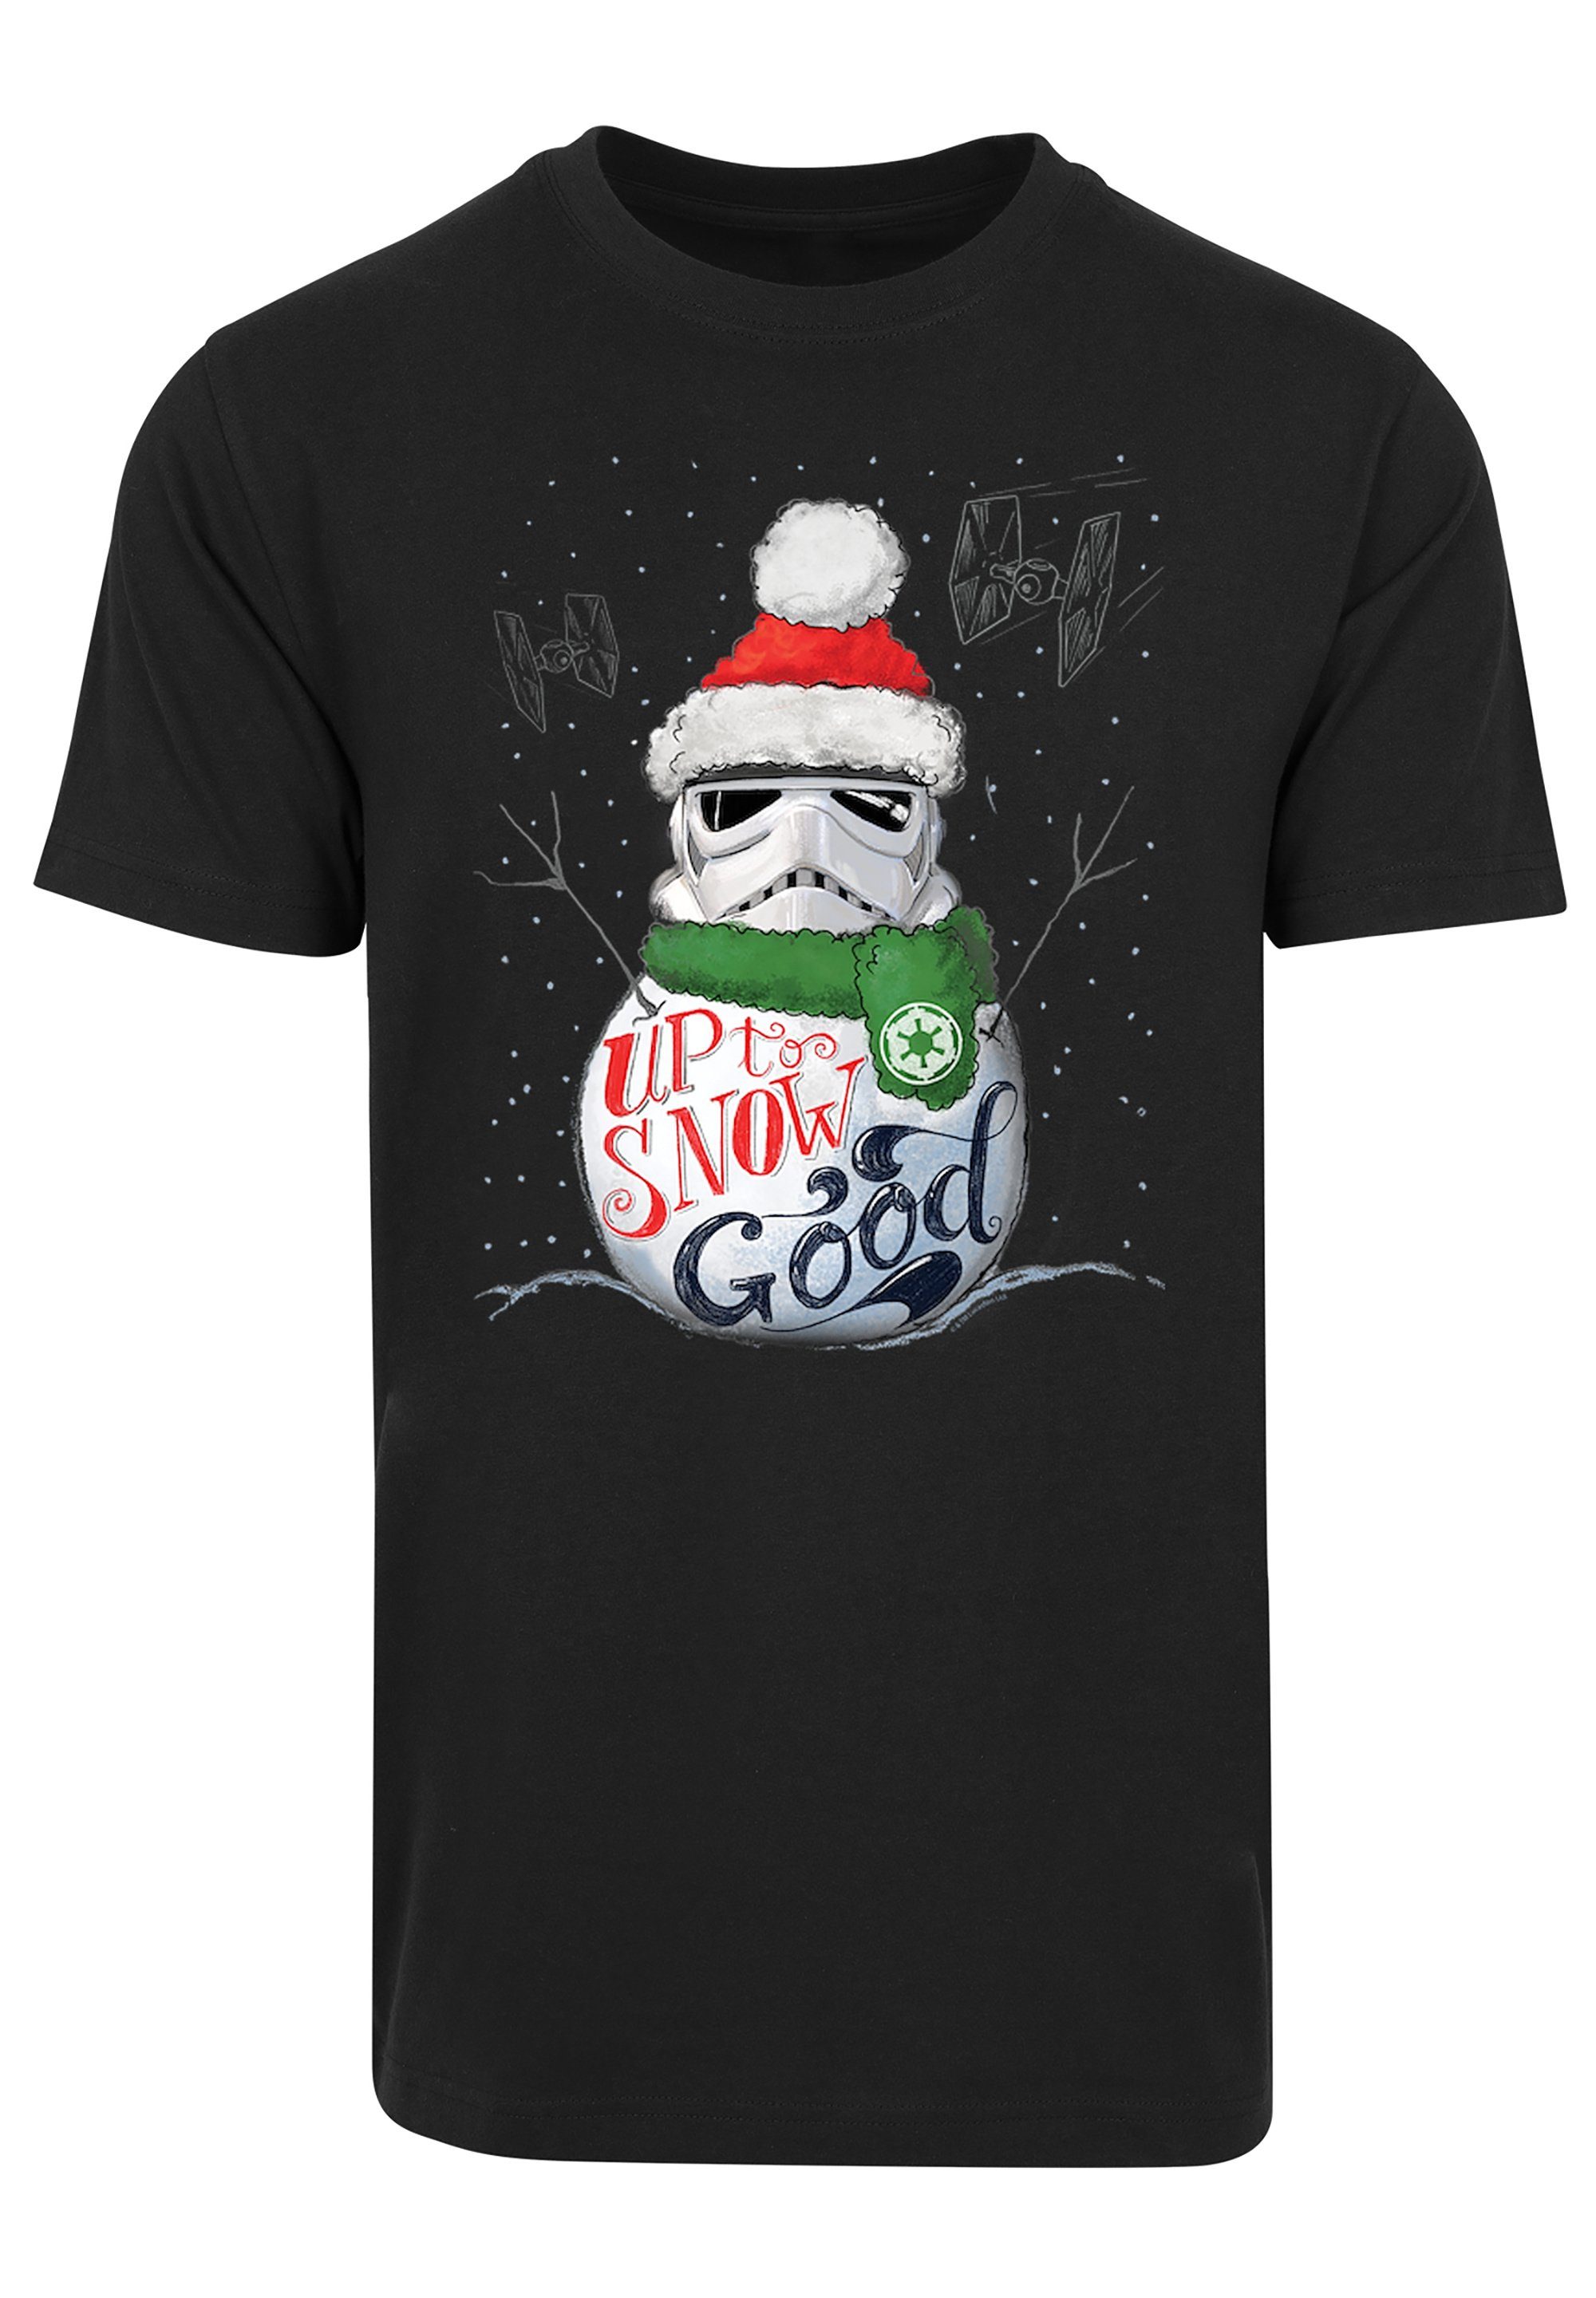 F4NT4STIC T-Shirt Sterne Good Stromtrooper Krieg schwarz der To Wars Star Print Snow Up